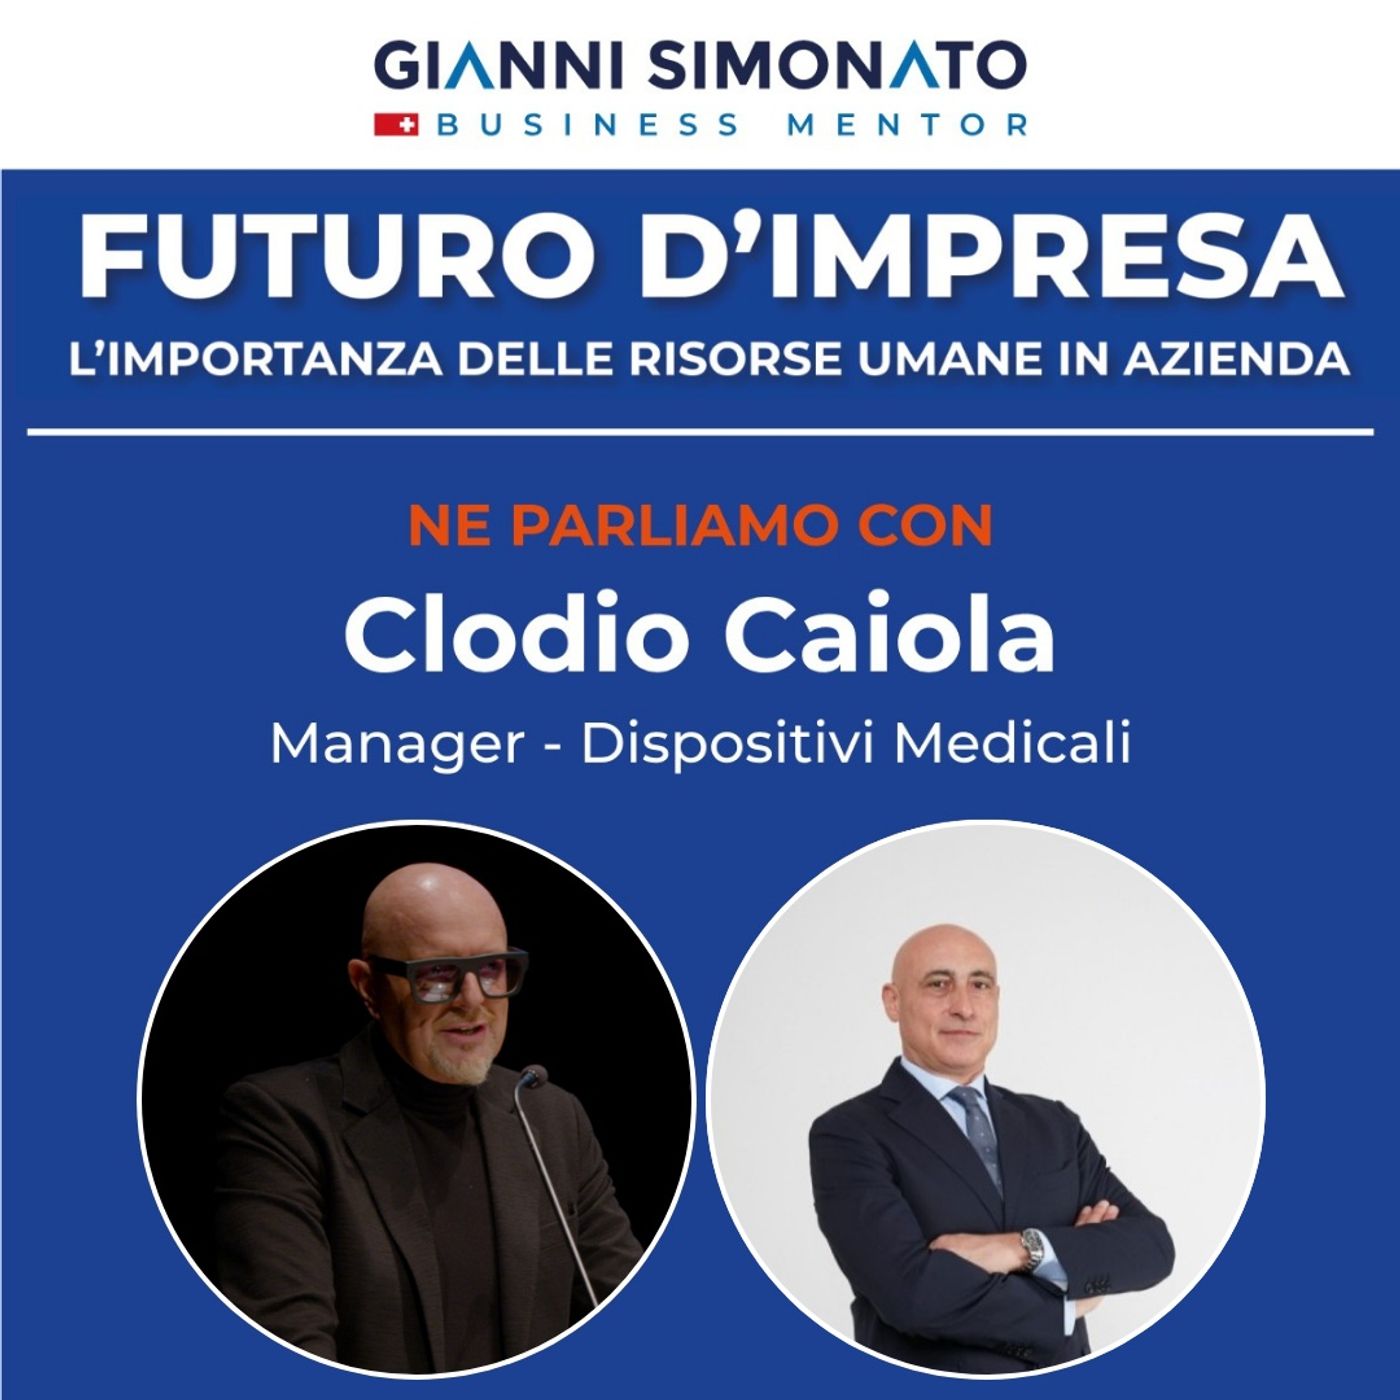 Futuro d'Impresa ne parliamo con: Clodio Caiola - Manager Dispositivi Medicali e Gianni Simonato CEO Mentor